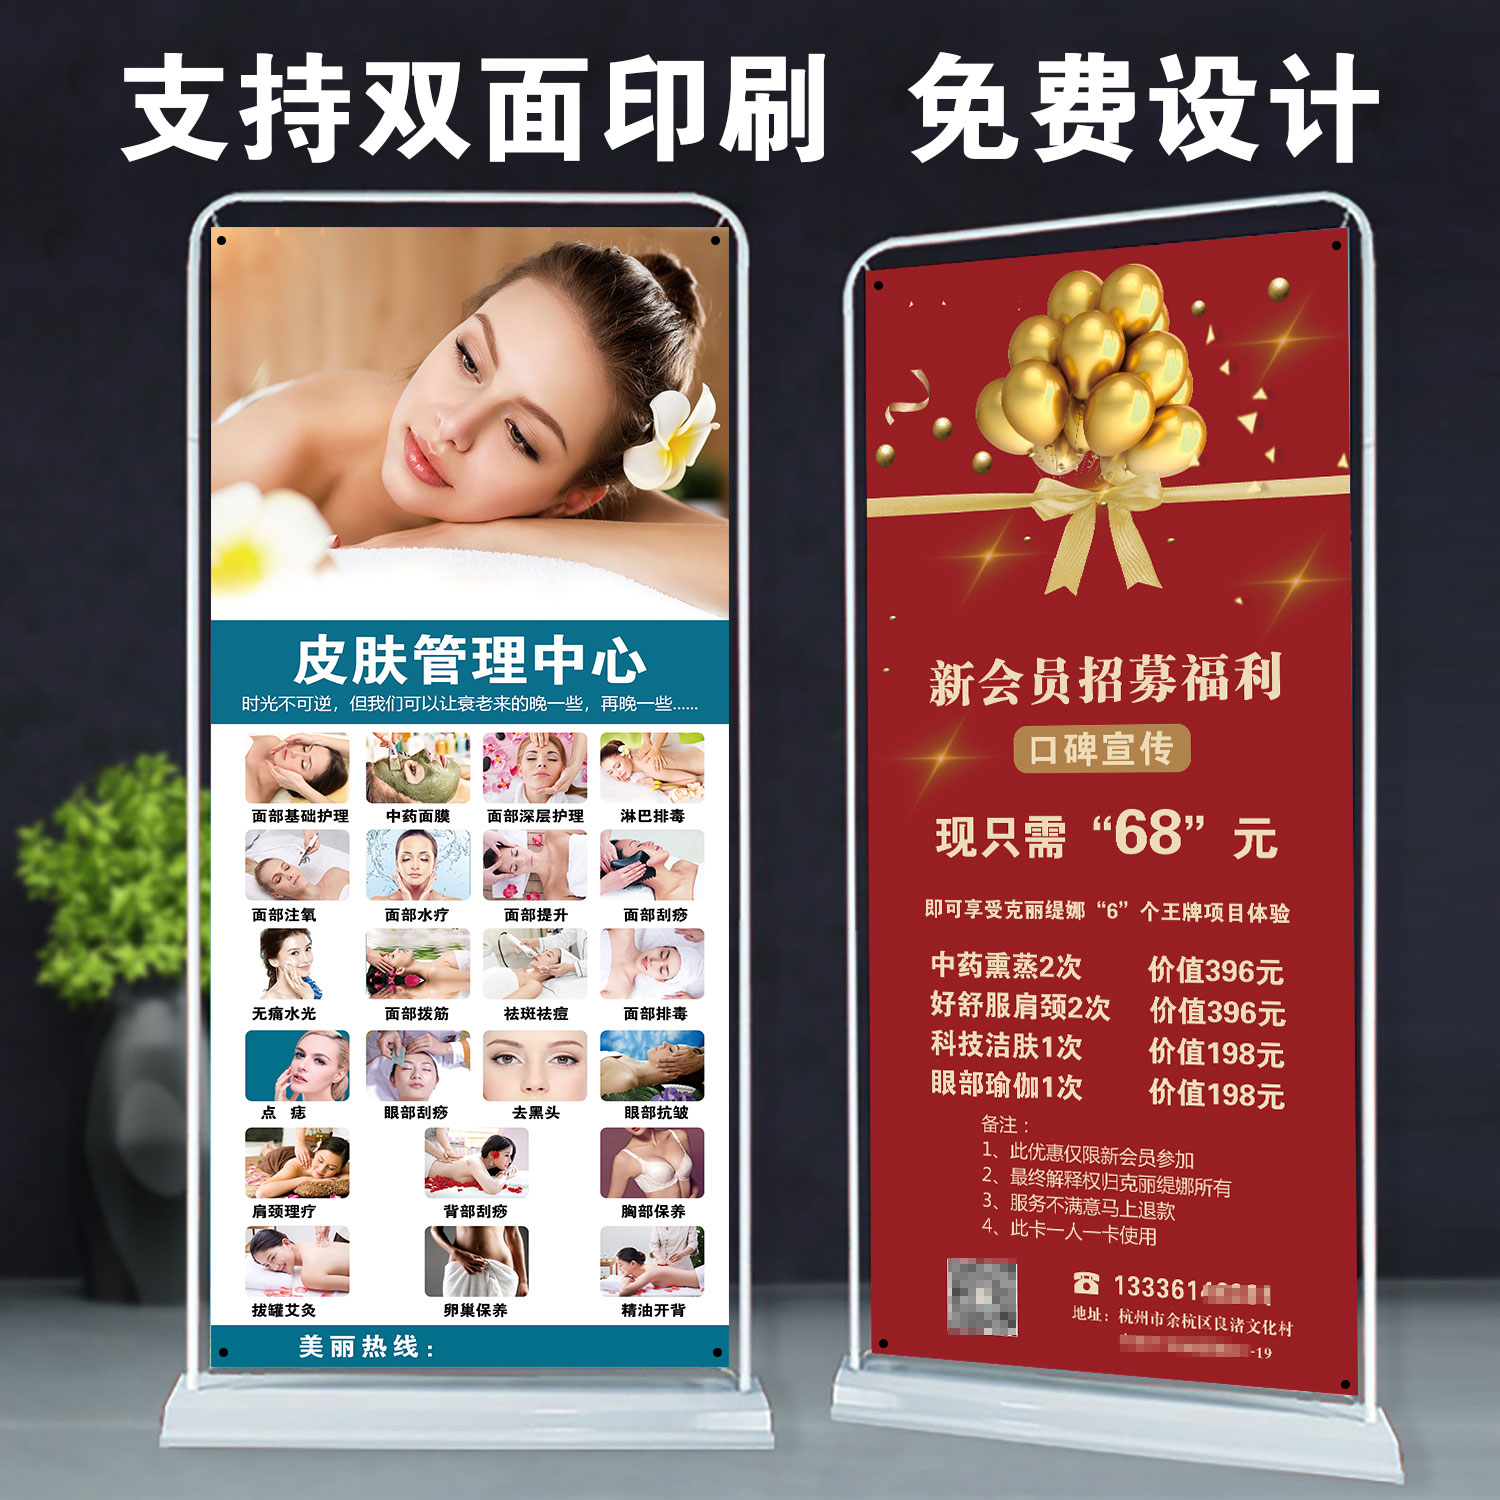 美容院养生馆皮肤管理广告挂图身体保养面部护理活动宣传海报展架